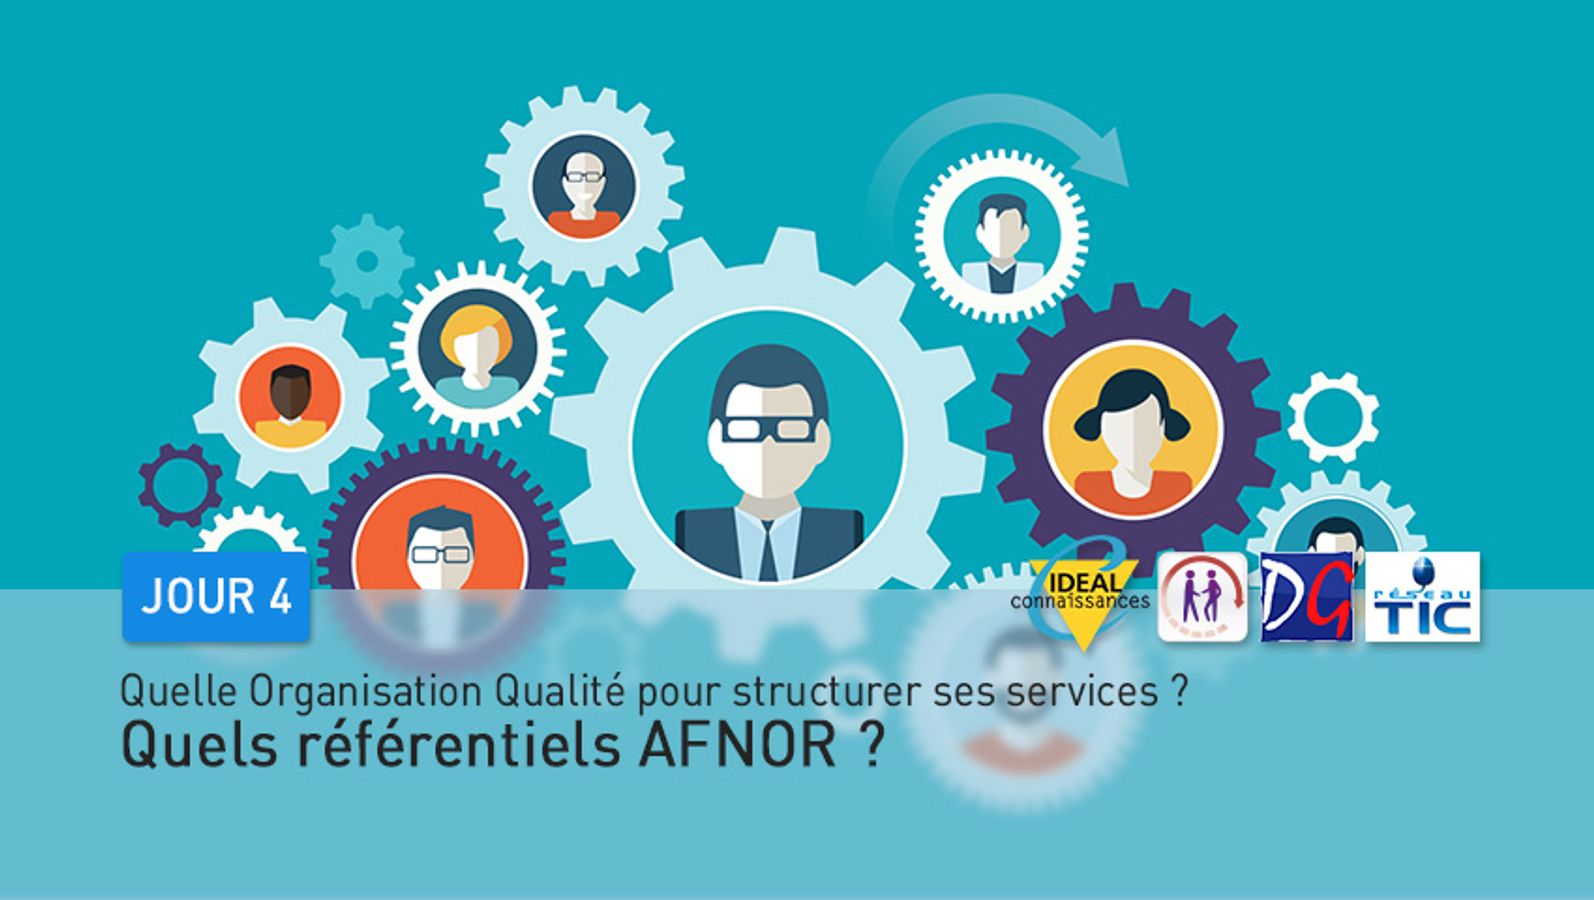 Jour 4 : Quelle Organisation Qualité pour structurer ses services ? quels référentiels AFNOR ?